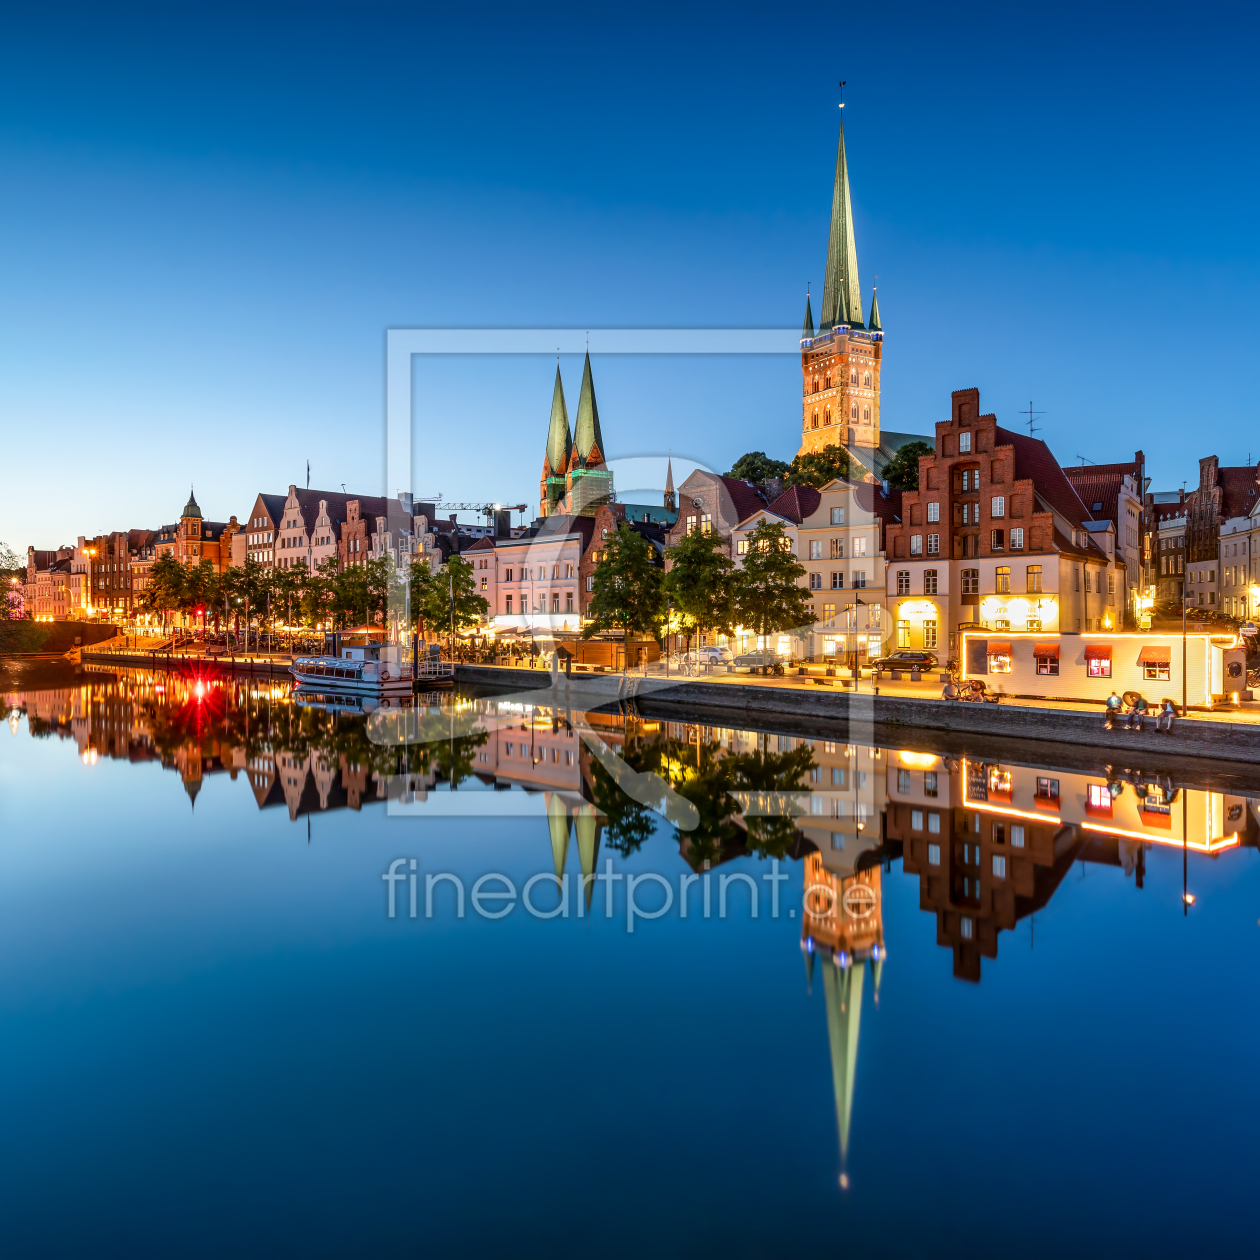 Bild-Nr.: 12002113 Historische Altstadt von Lübeck bei Nacht erstellt von eyetronic